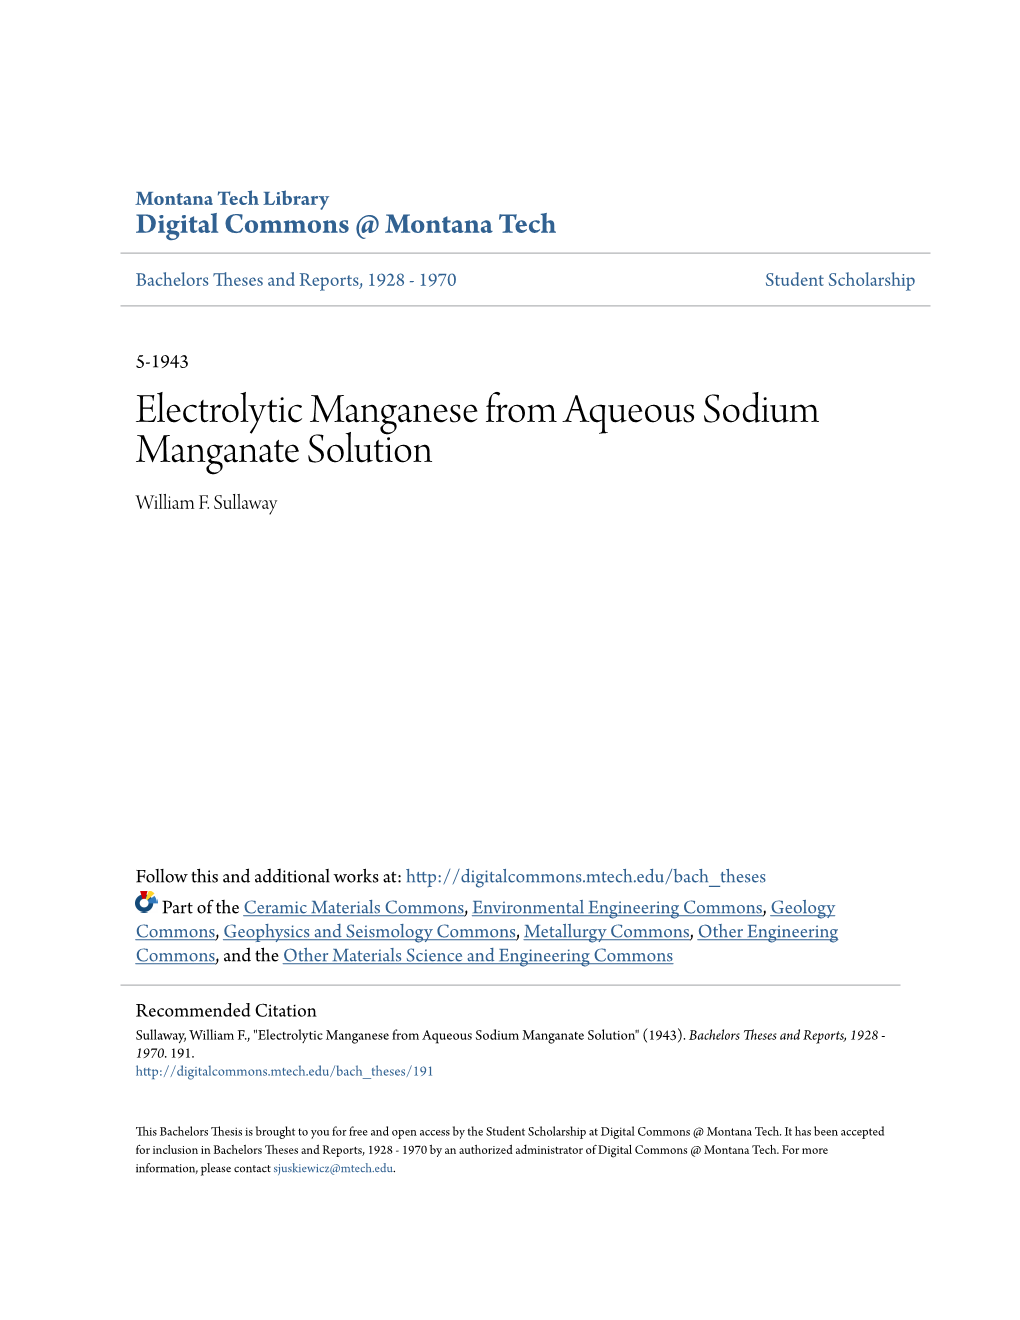 Electrolytic Manganese from Aqueous Sodium Manganate Solution William F